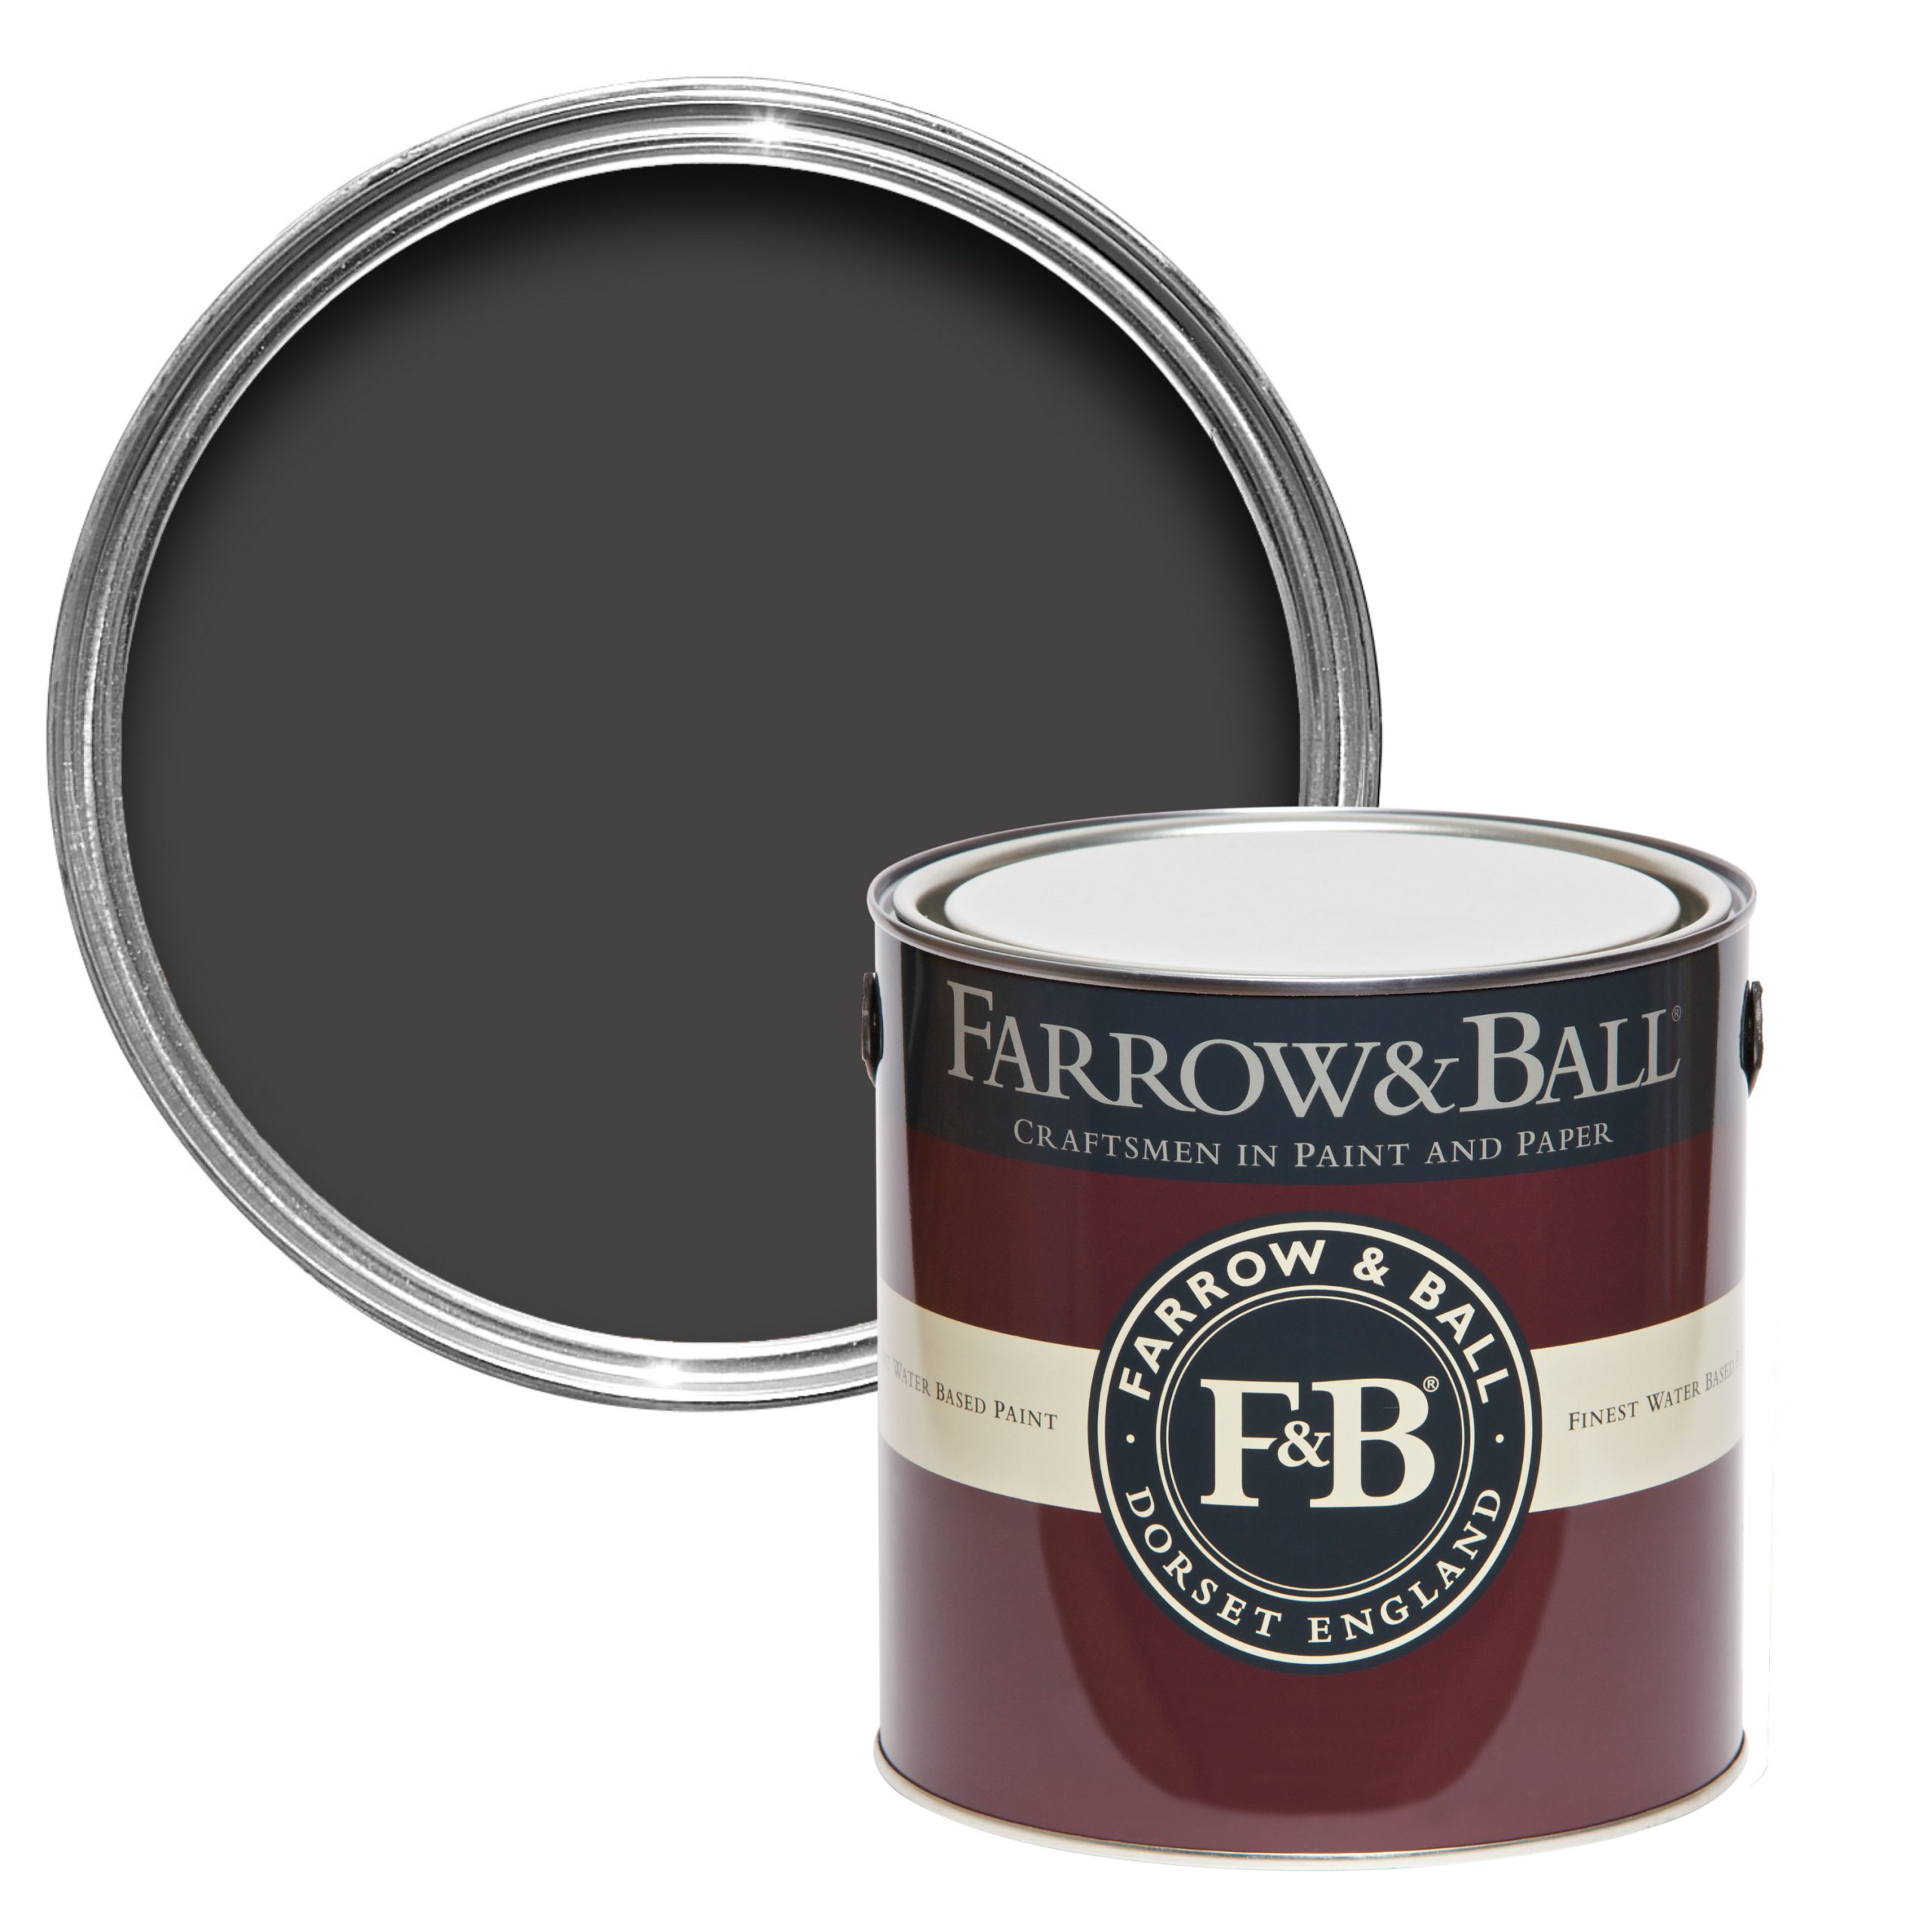 Vopsea maro lucioasa 95% luciu pentru interior exterior Farrow & Ball Full Gloss Tanners Brown No. 255 750 ml